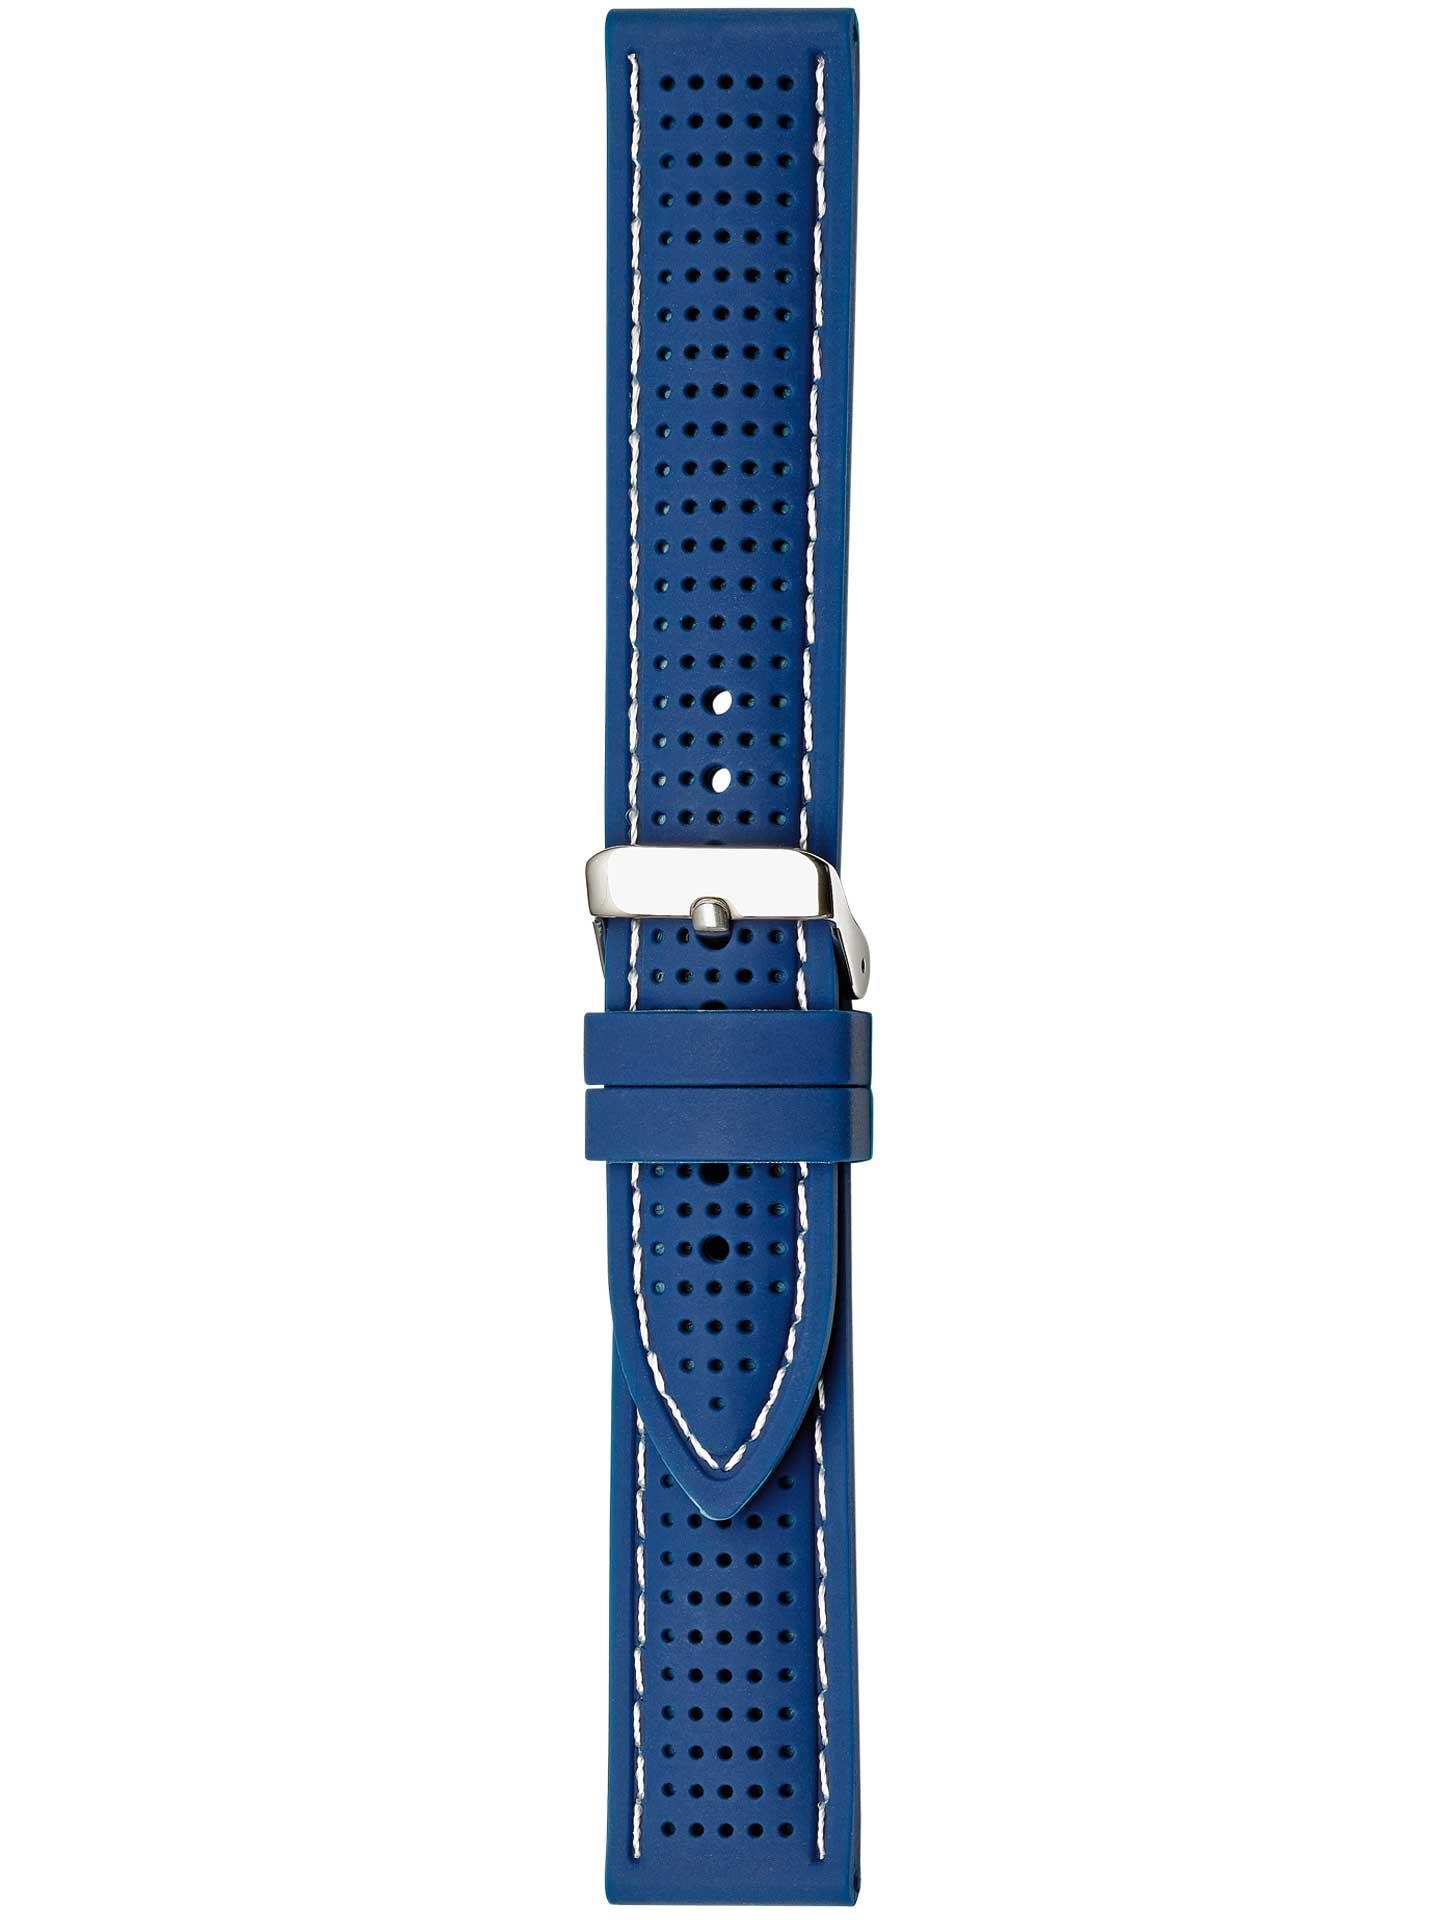 Silikonband 20mm blau mit weißer Naht